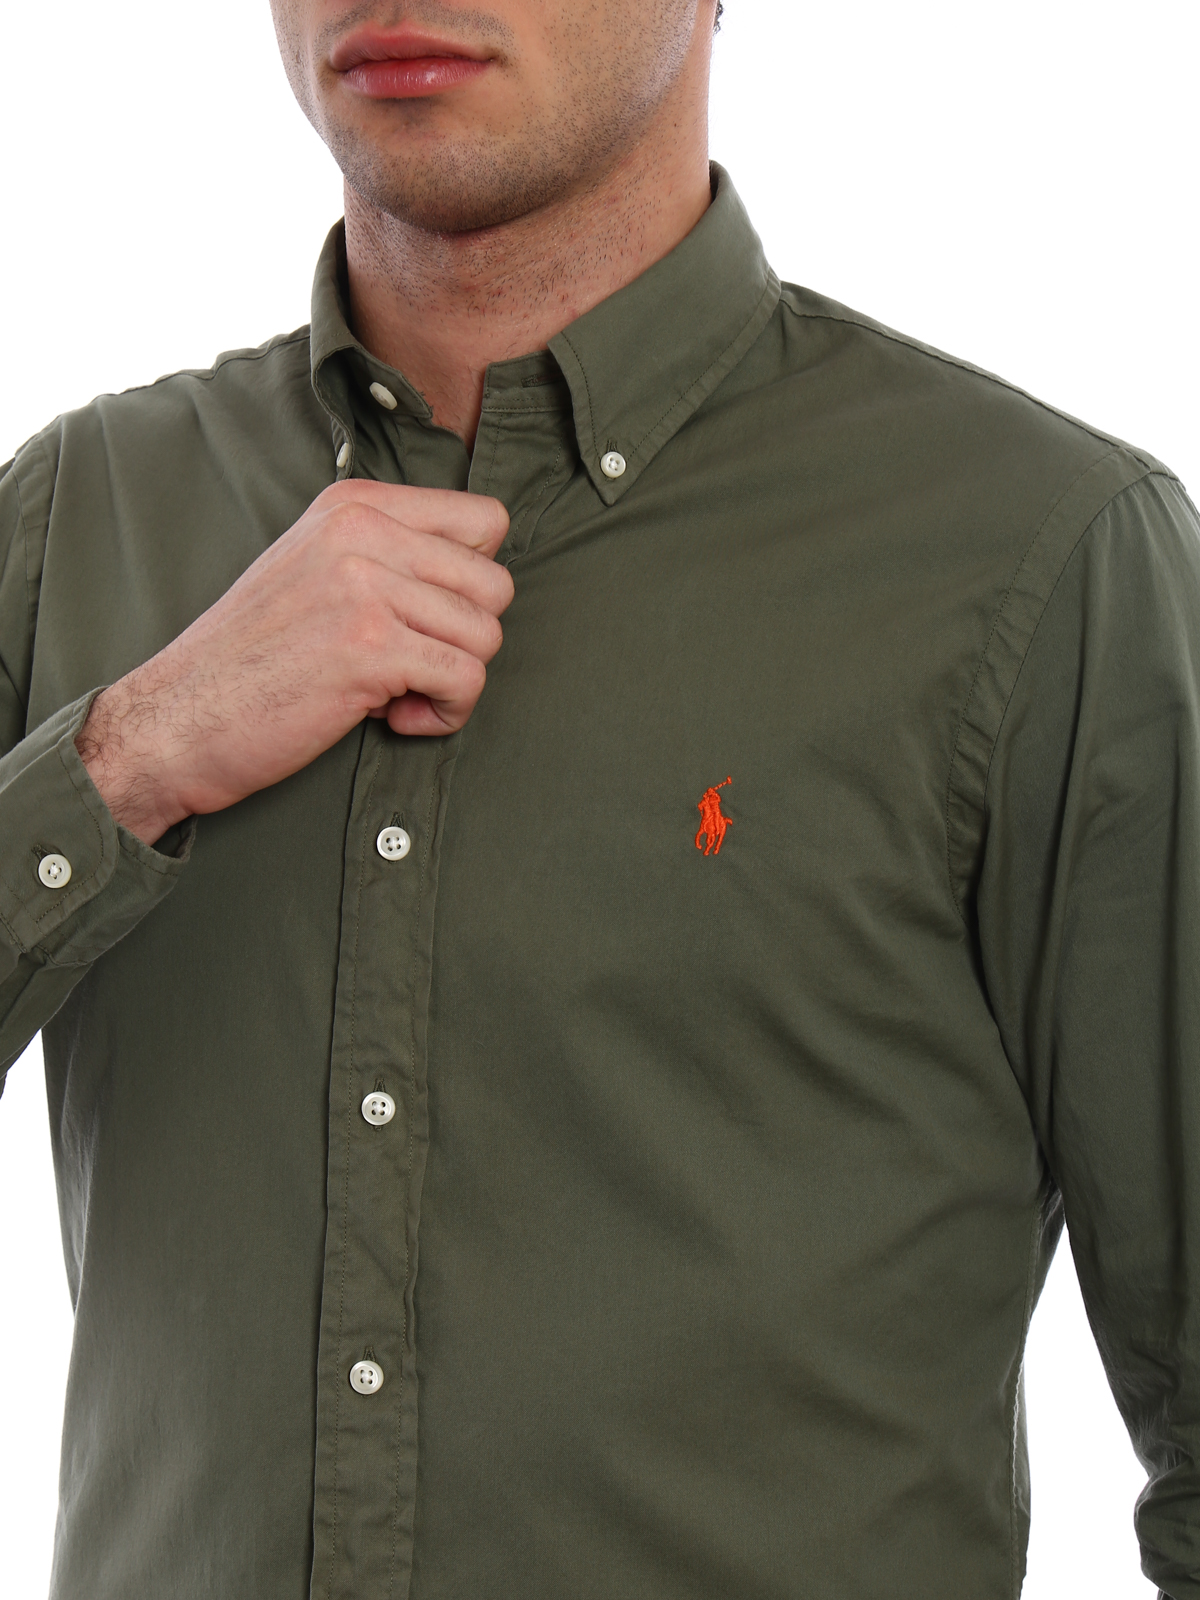 Hubert Hudson Proficiat zuiden Shirts Ralph Lauren - Orange logo classic cotton shirt - 710695886010